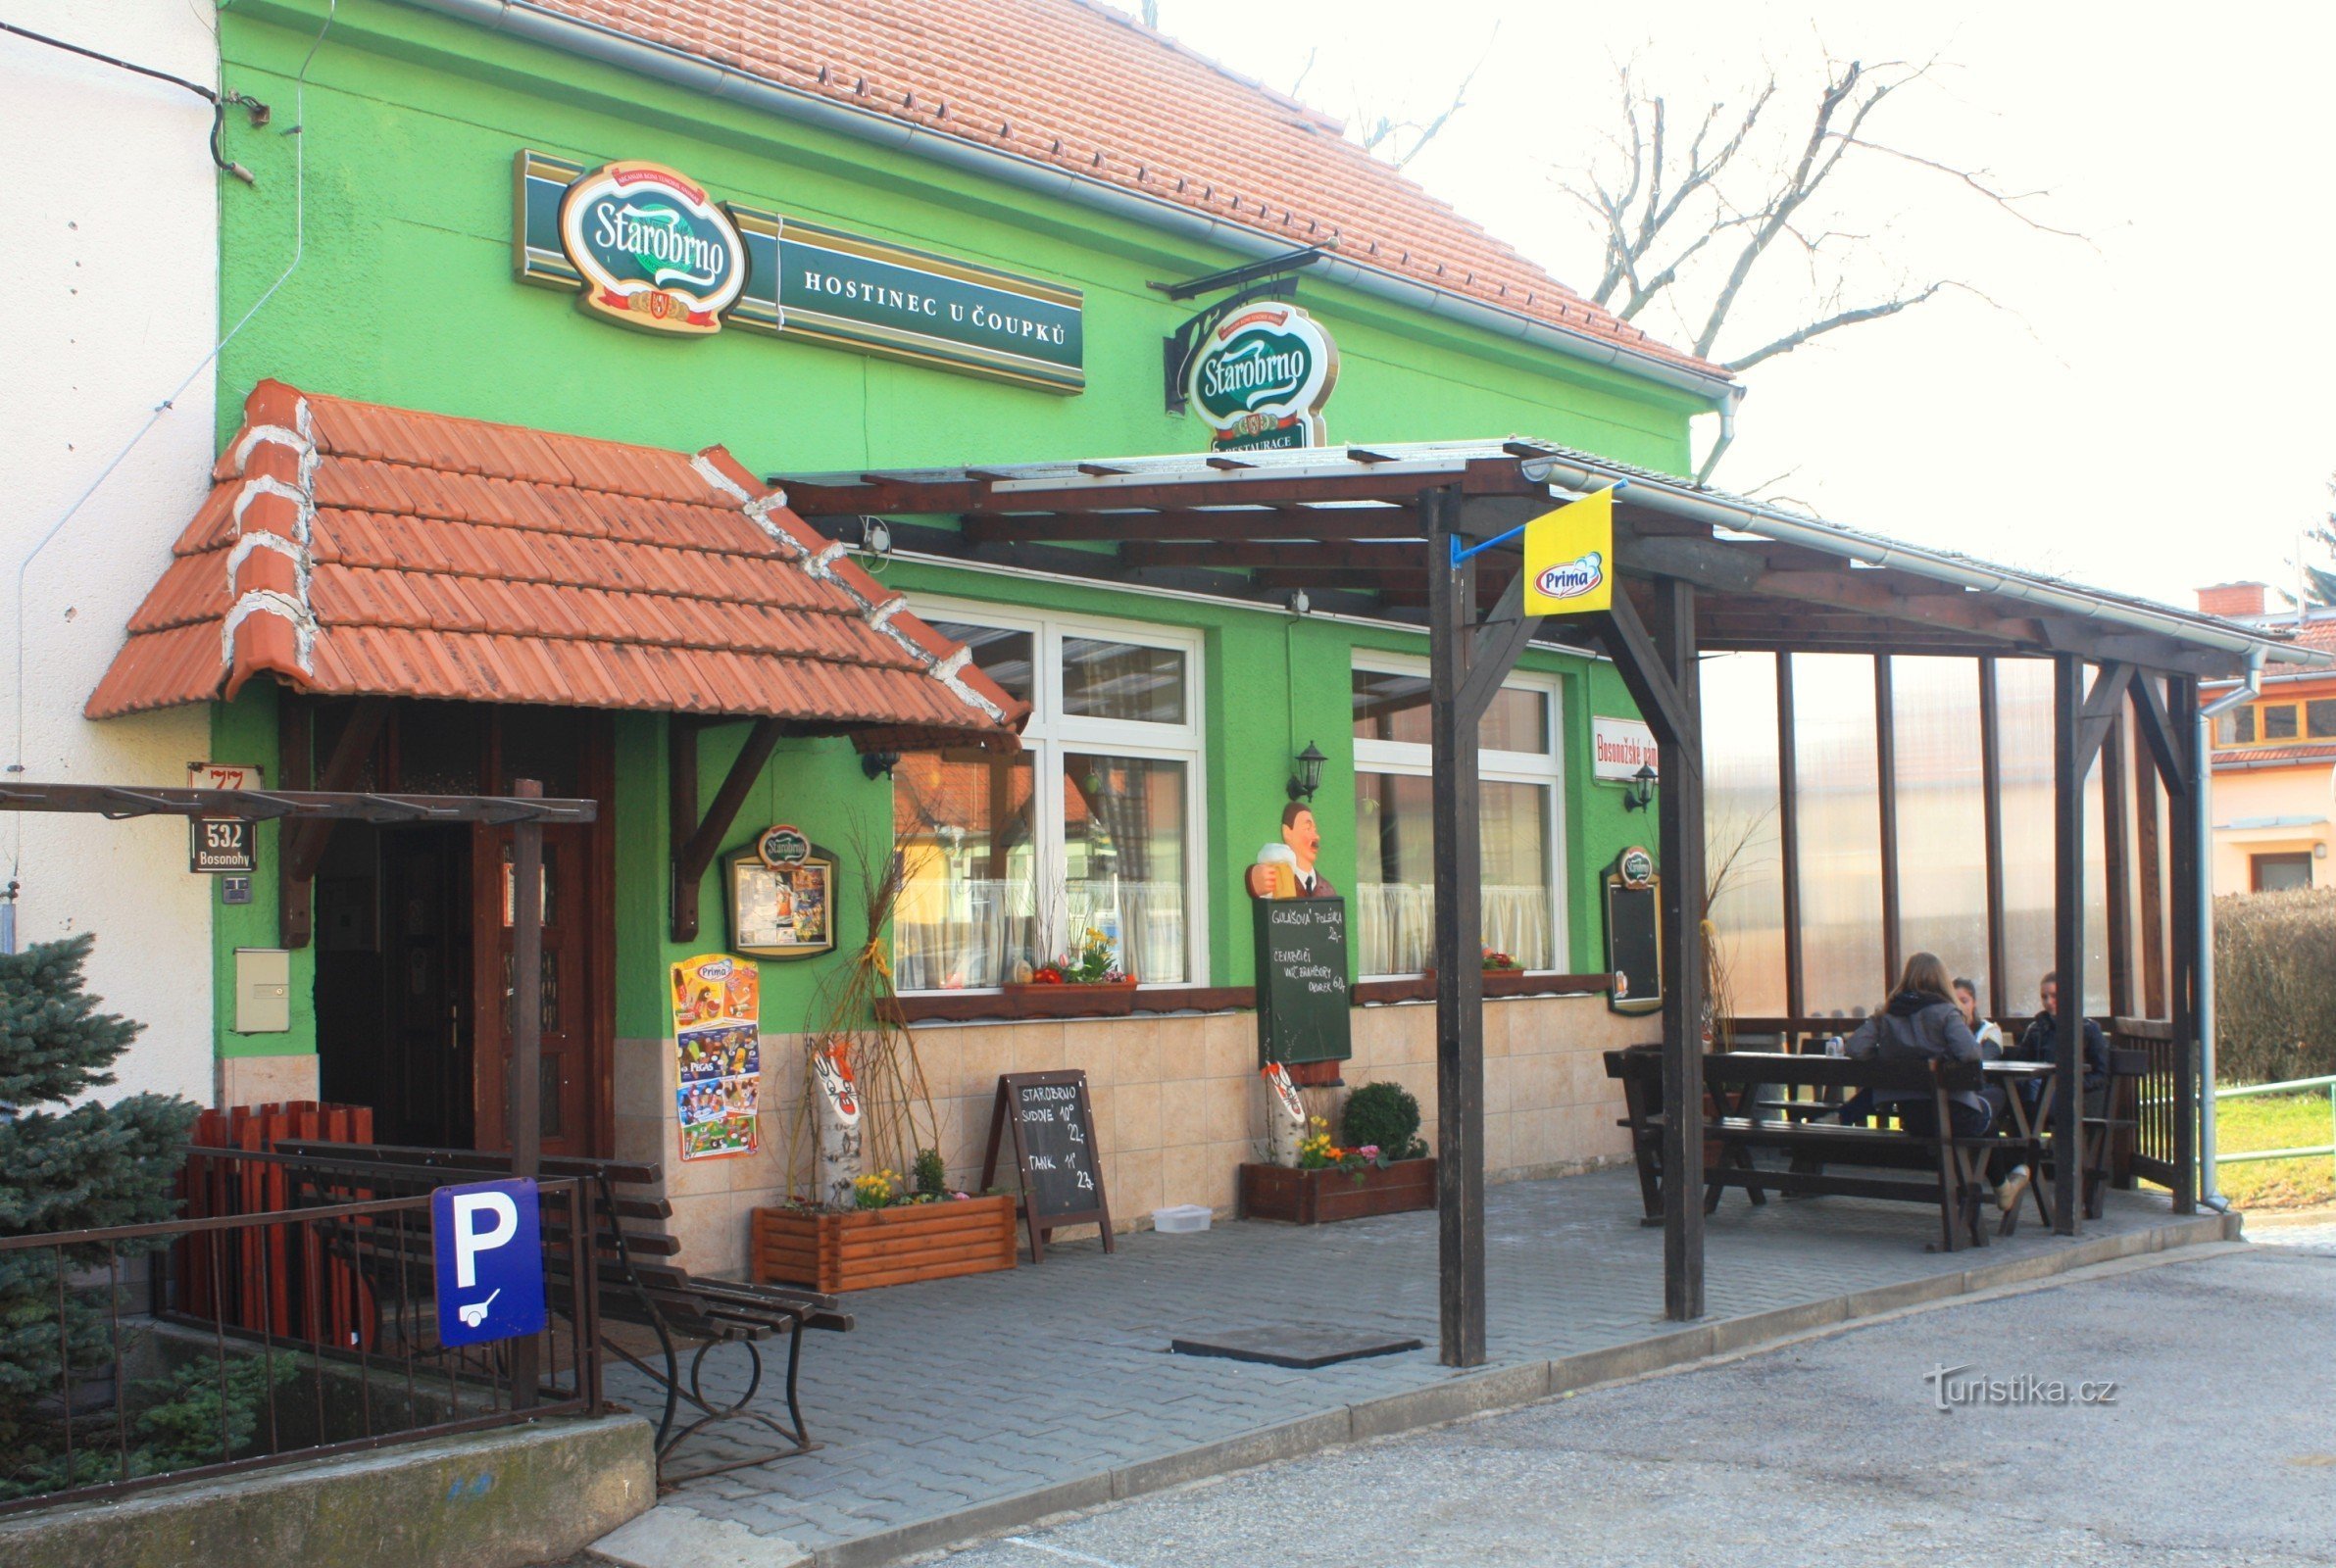 Brno-Bosonohy - Gasthof U Čoupků